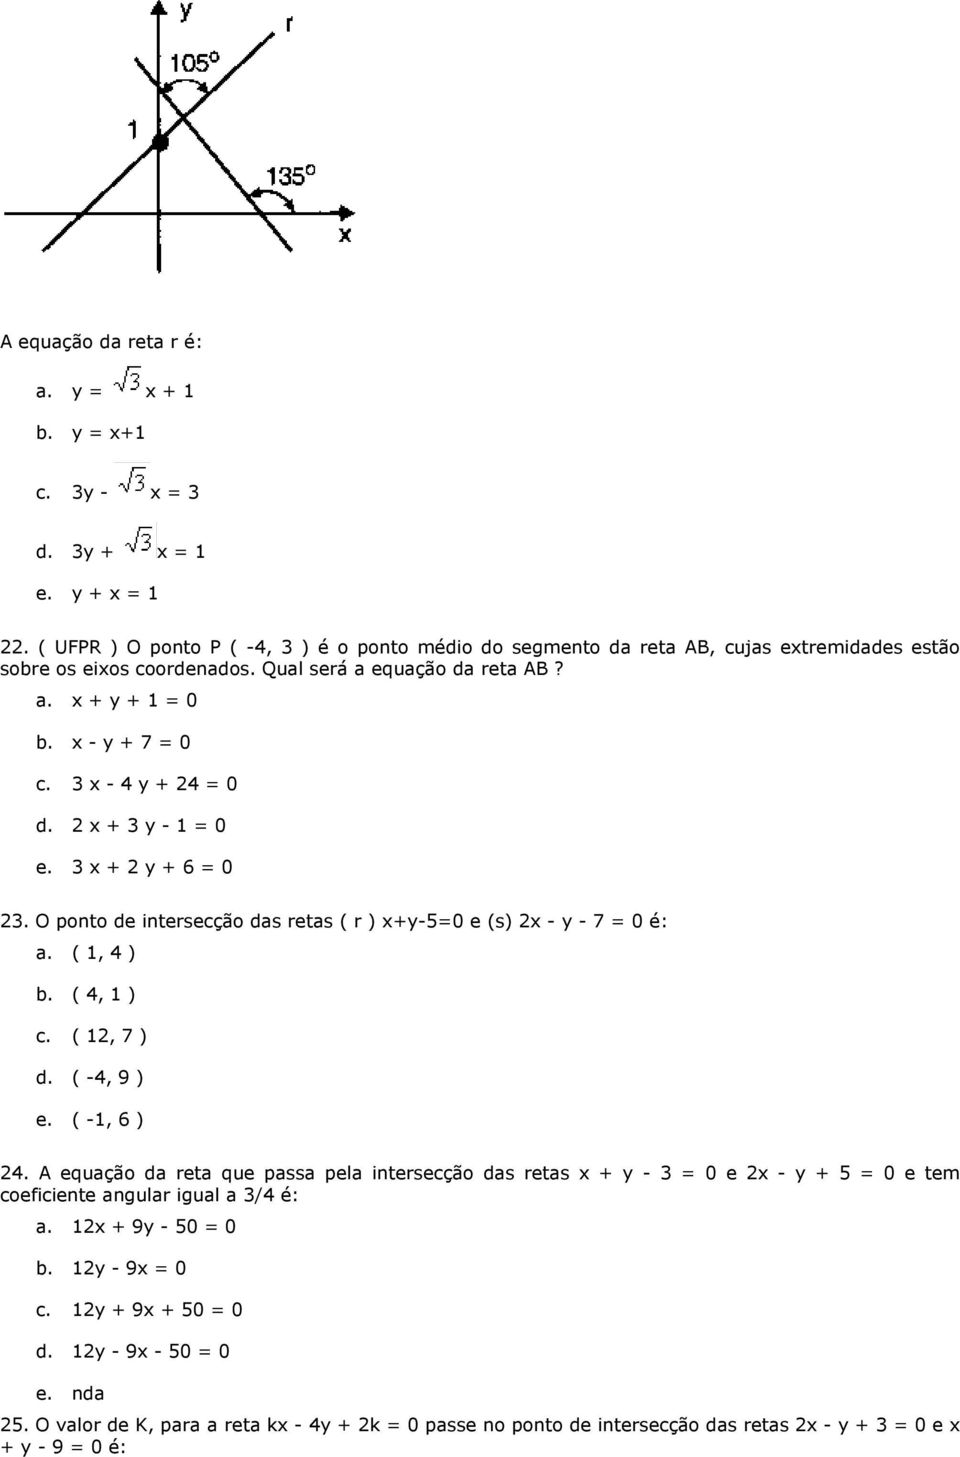 3 x - 4 y + 24 = 0 d. 2 x + 3 y - 1 = 0 e. 3 x + 2 y + 6 = 0 23. O ponto de intersecção das retas ( r ) x+y-5=0 e (s) 2x - y - 7 = 0 é: a. ( 1, 4 ) b. ( 4, 1 ) c. ( 12, 7 ) d. ( -4, 9 ) e.